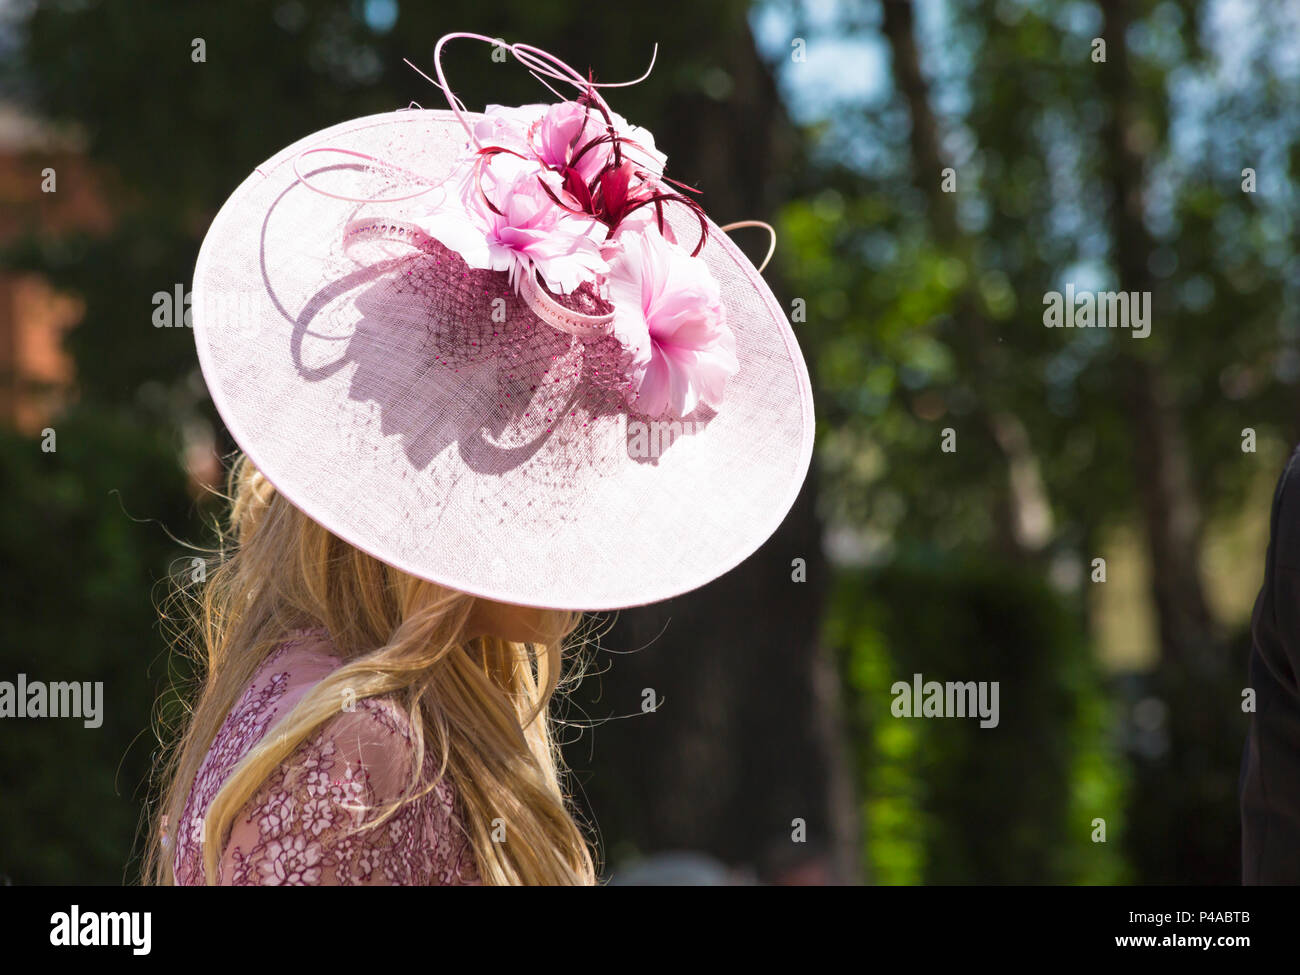 Royal ascot hats immagini e fotografie stock ad alta risoluzione - Alamy